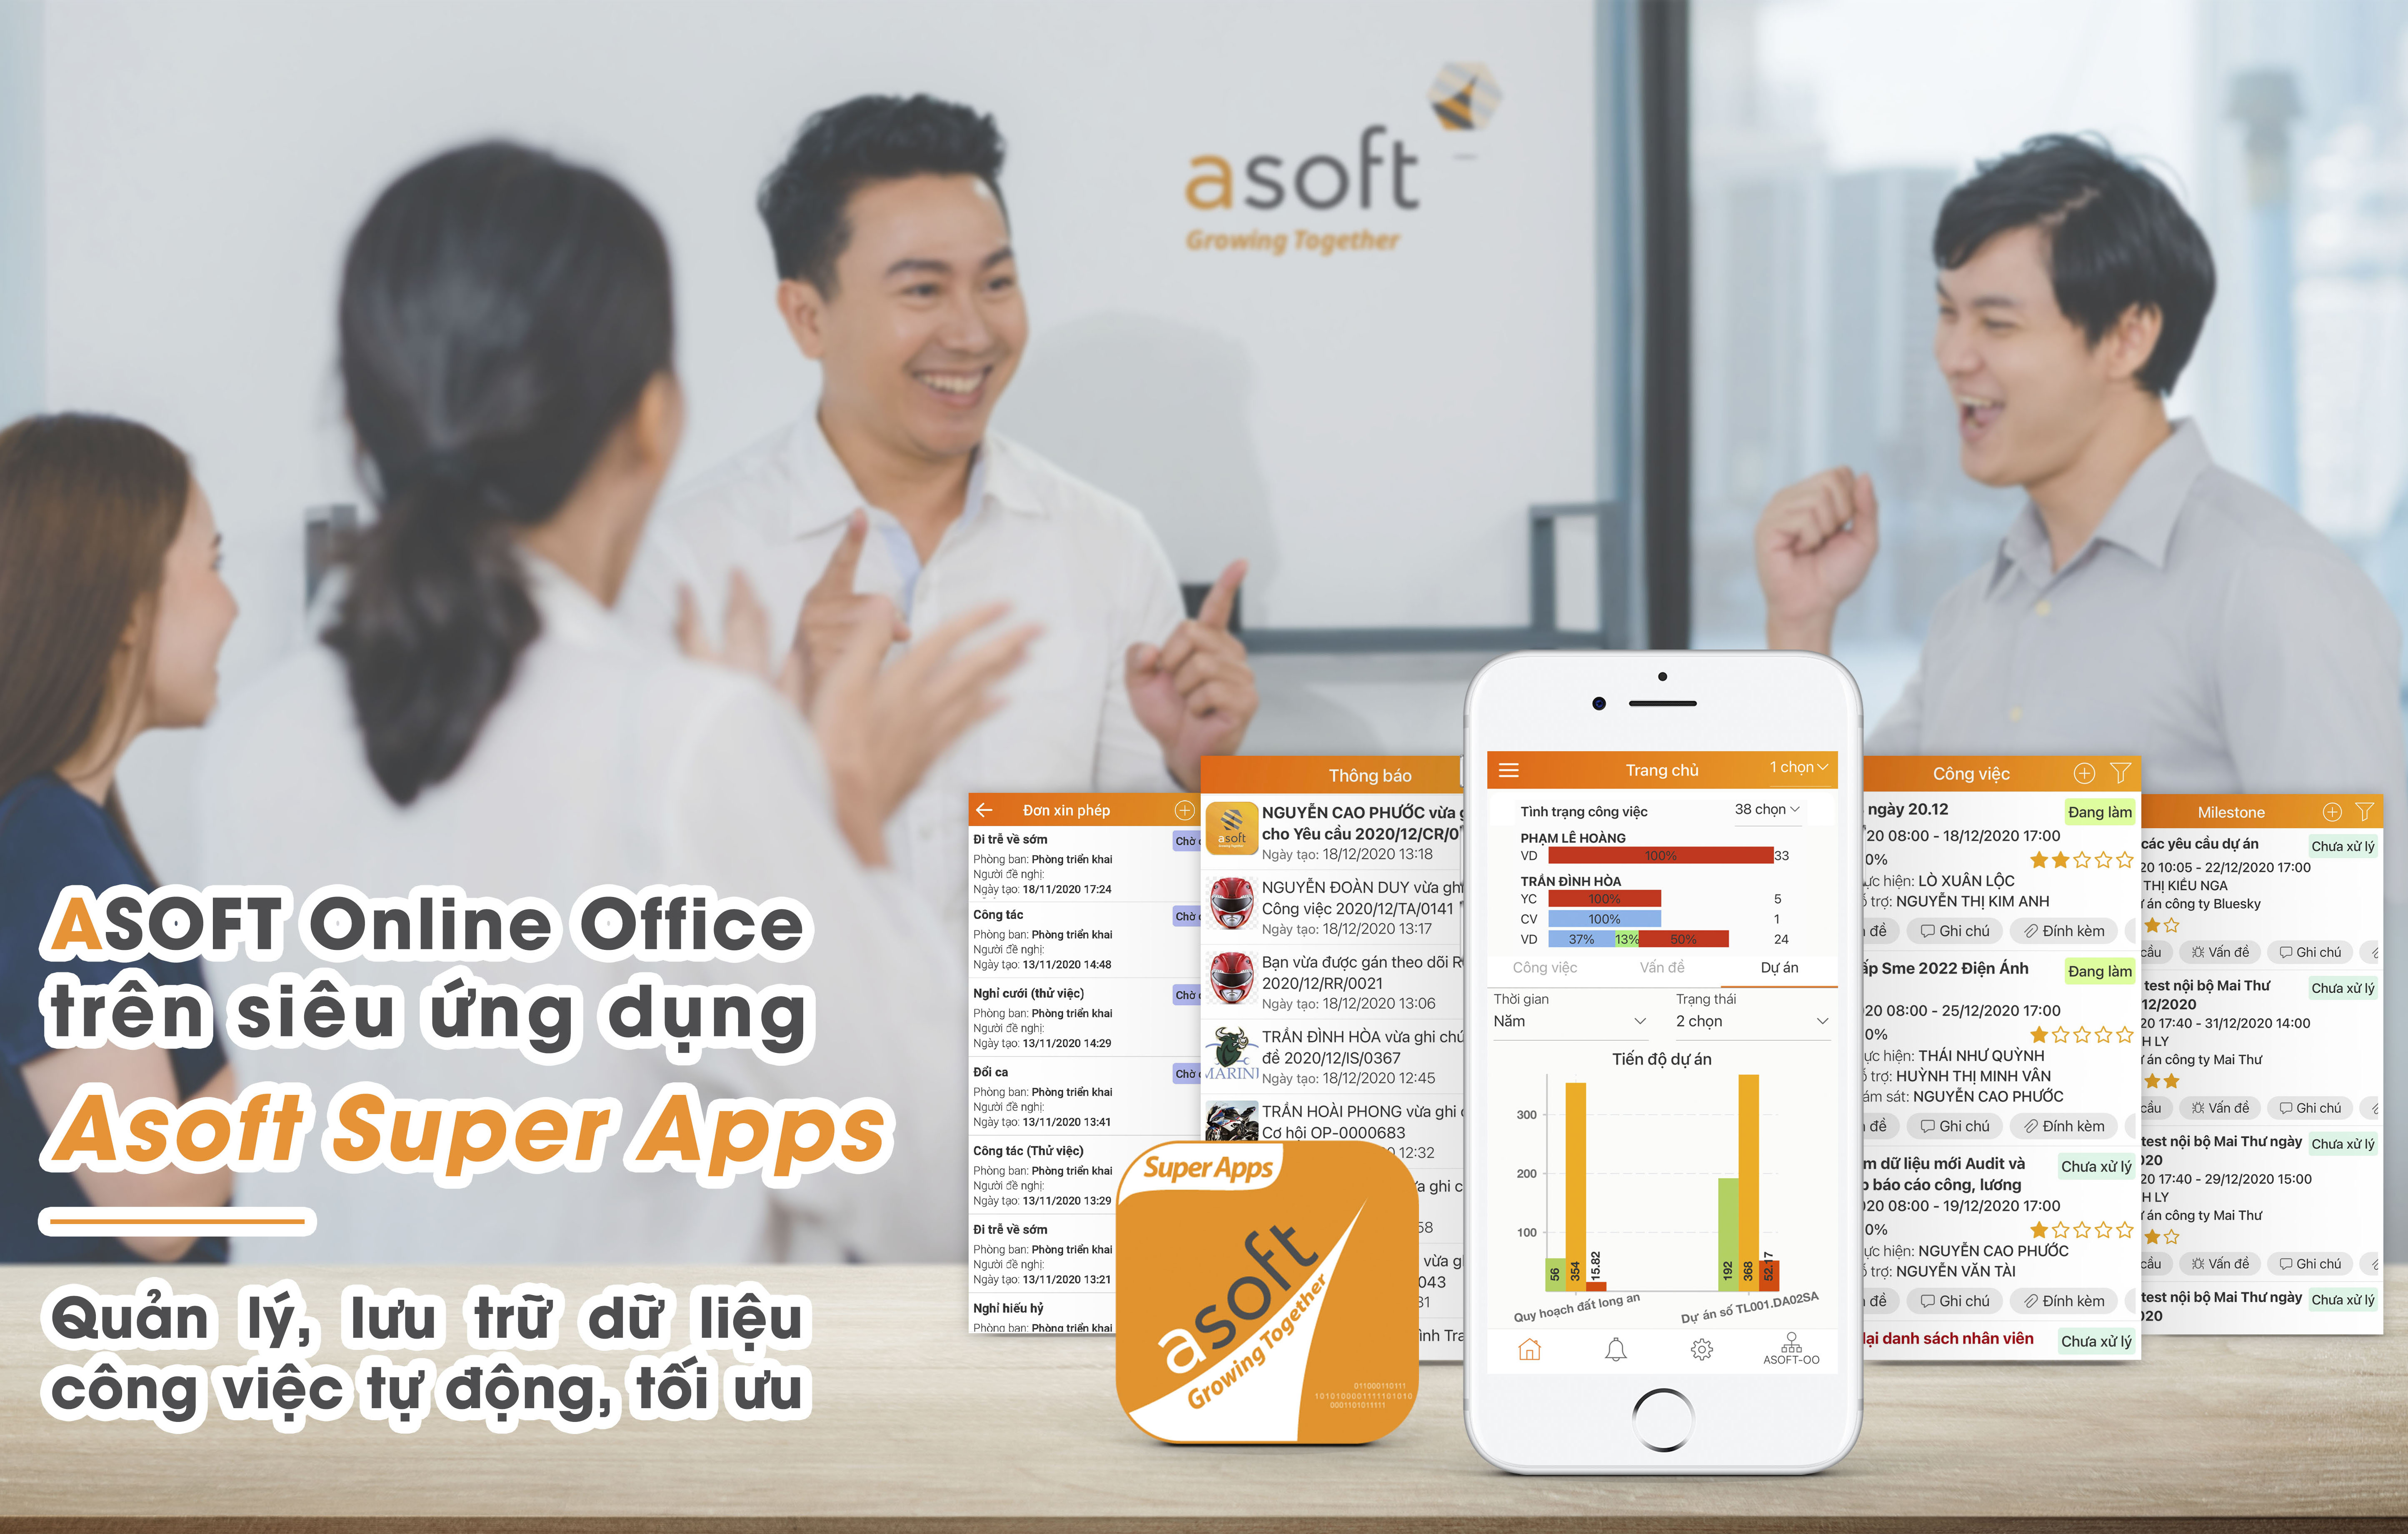 Giới thiệu Asoft Super Apps – Siêu ứng dụng tiện lợi và mạnh mẽ – quản trị doanh nghiệp trong lòng bàn tay